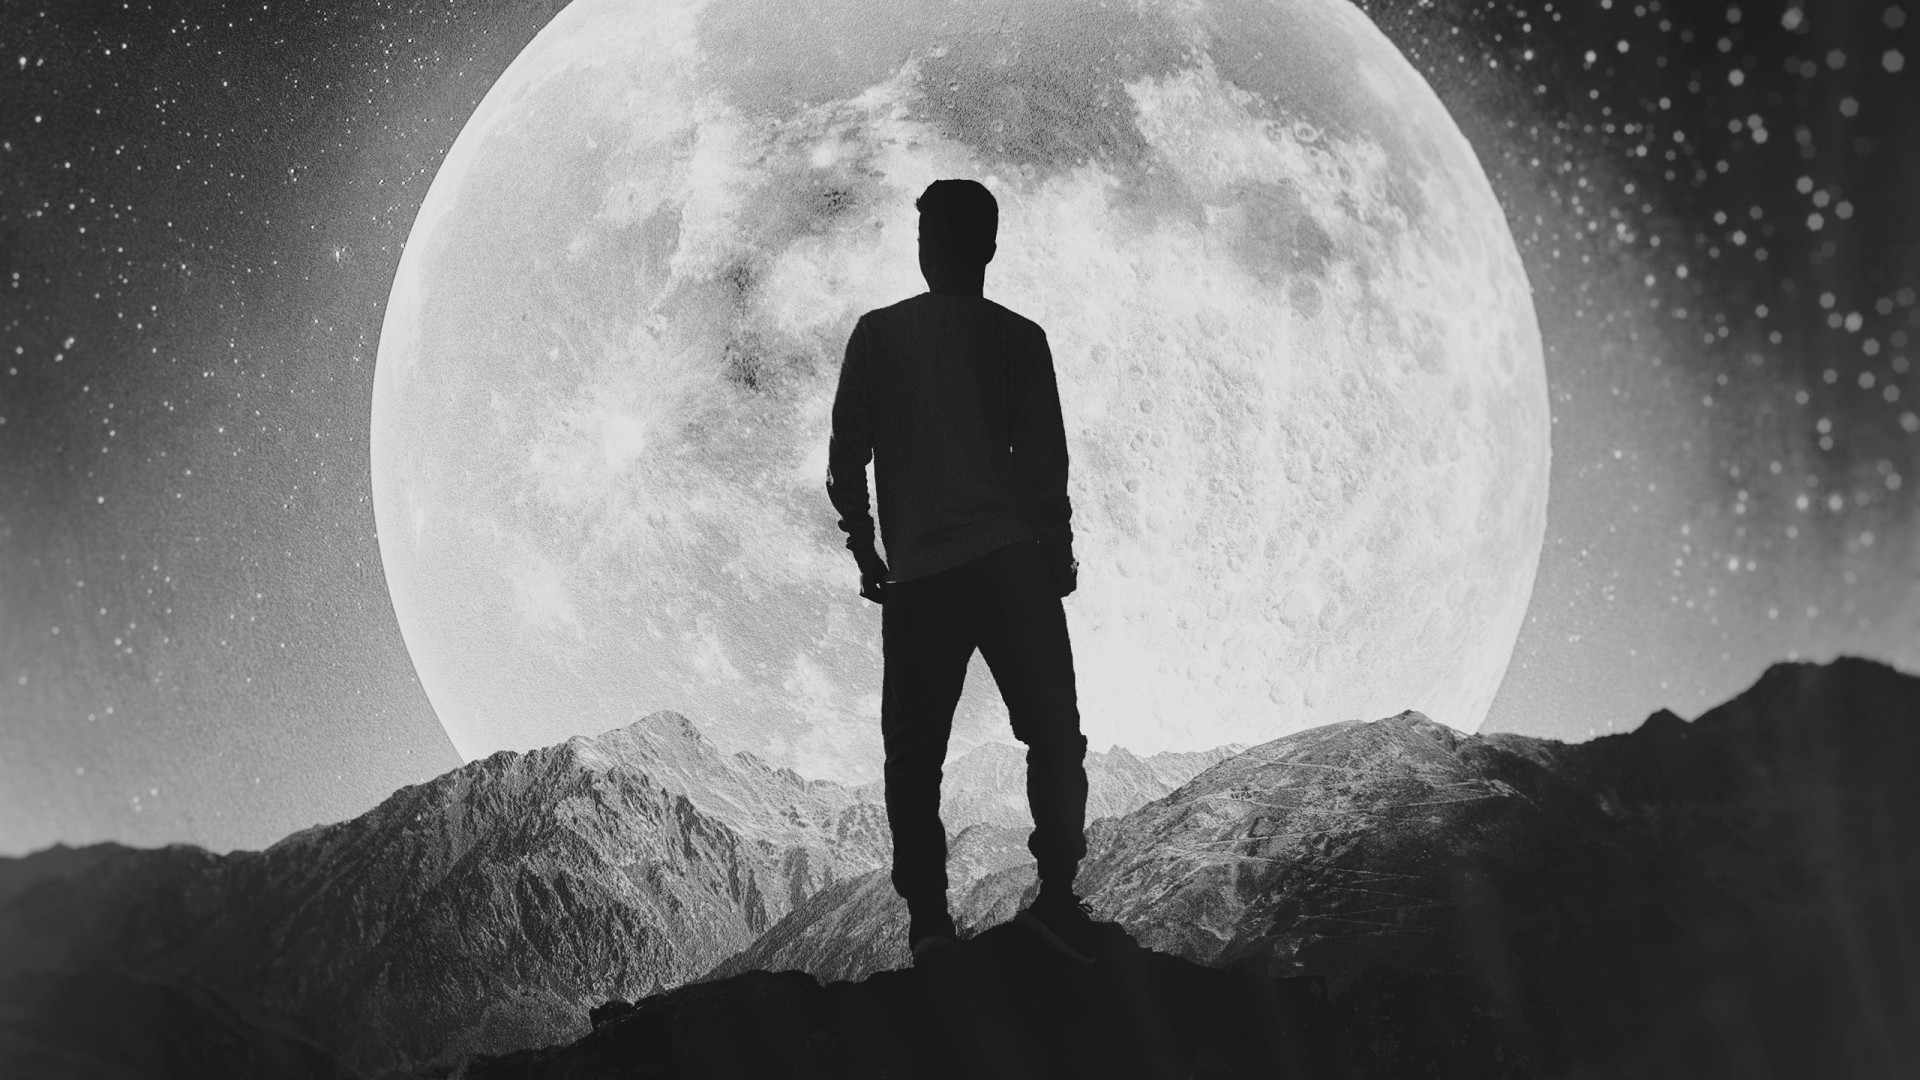 혼자 남자 벽지,사진,하늘,달,흑백 사진,검정색과 흰색